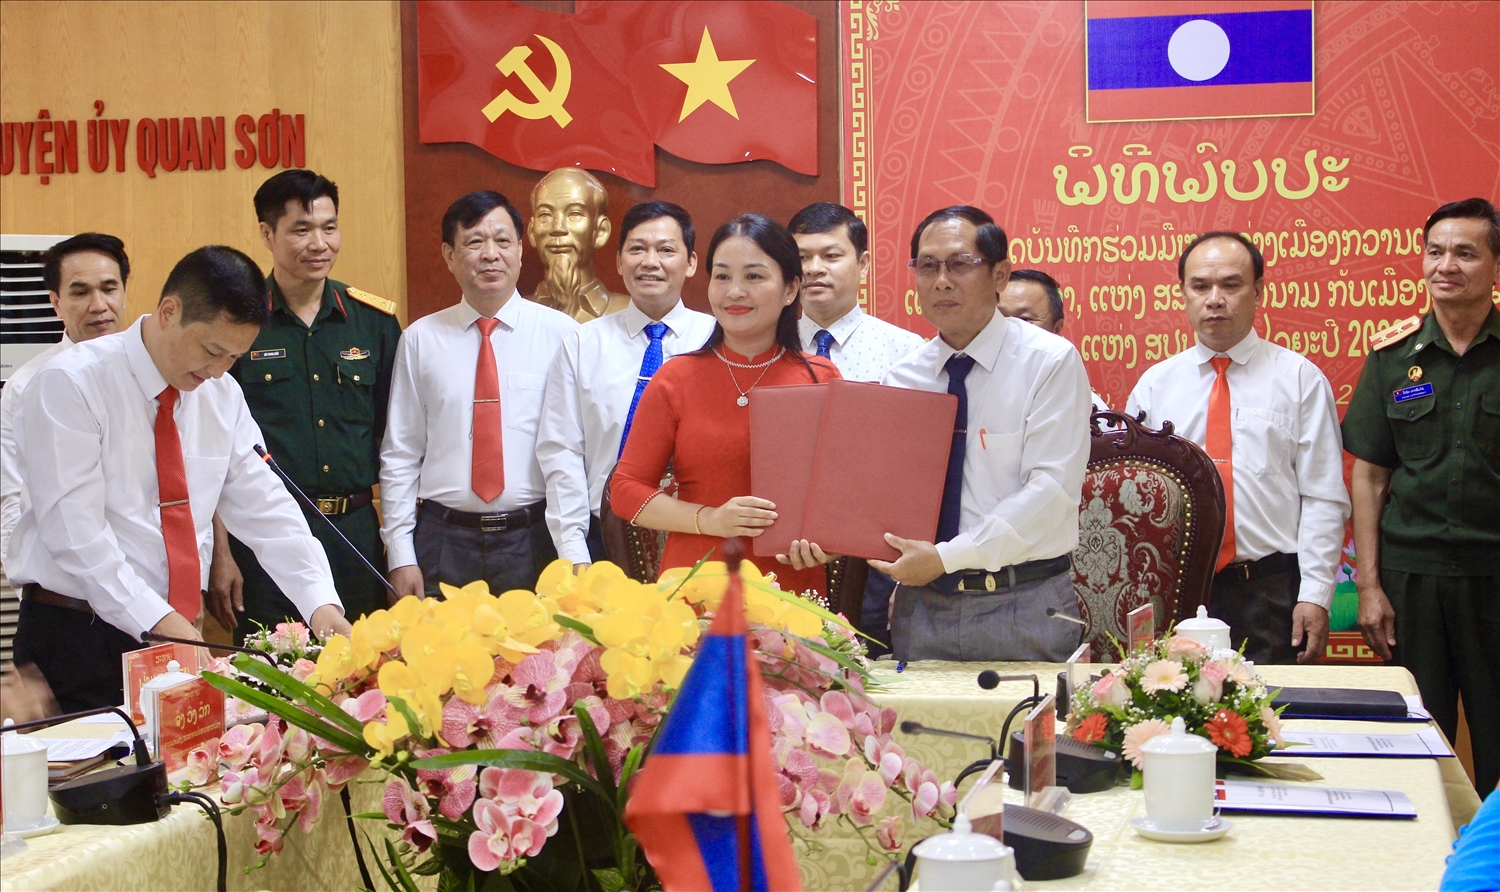 Hội đàm ký kết kết thỏa thuận hợp tác giữa hai huyện Quan Sơn - Viêng Xay giai đoạn 2022 - 2025